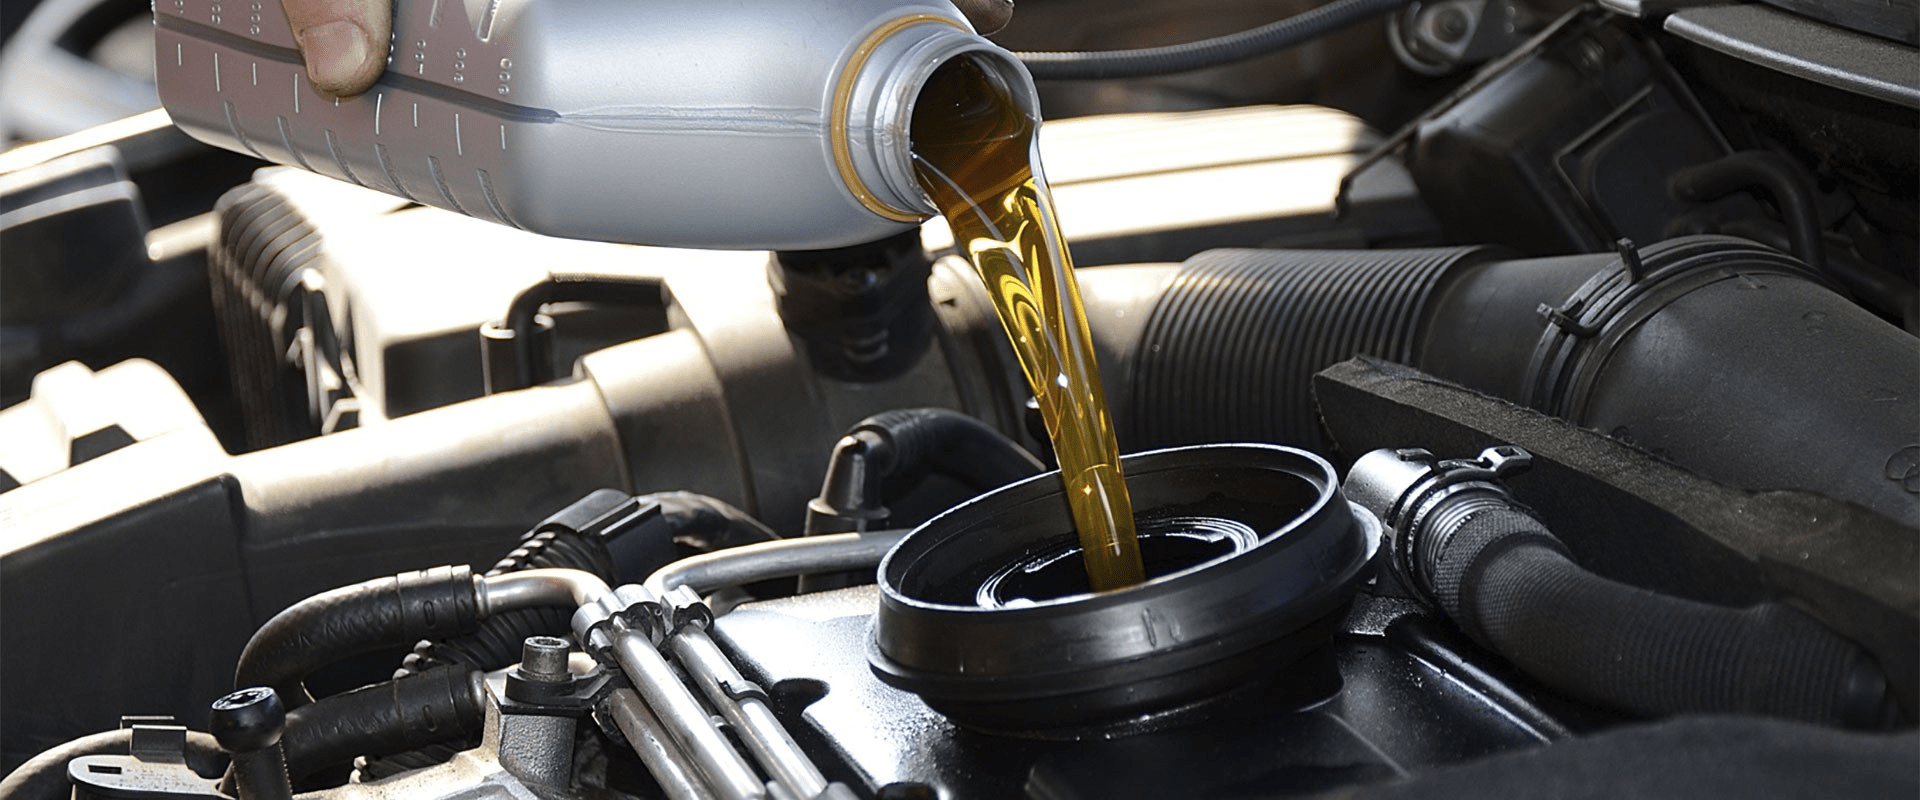 Определение правильного объема моторного масла для эффективной работы двигателя: основные рекомендации